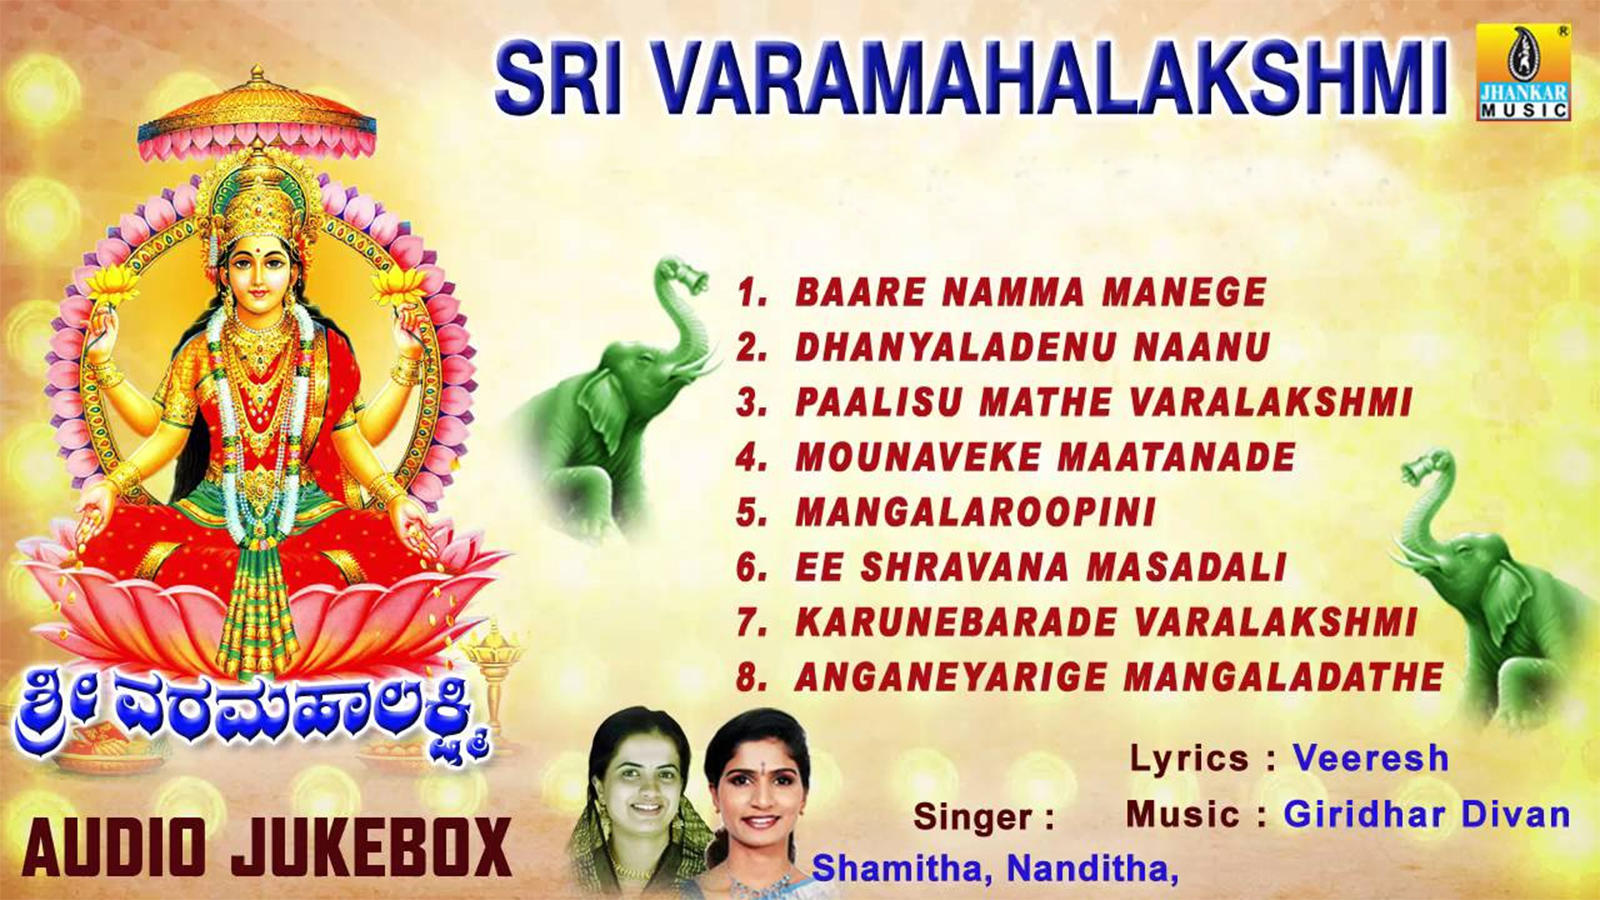 Maha Lakshmi Bhakti Songs: Check Out Popular Kannada Devotional ...